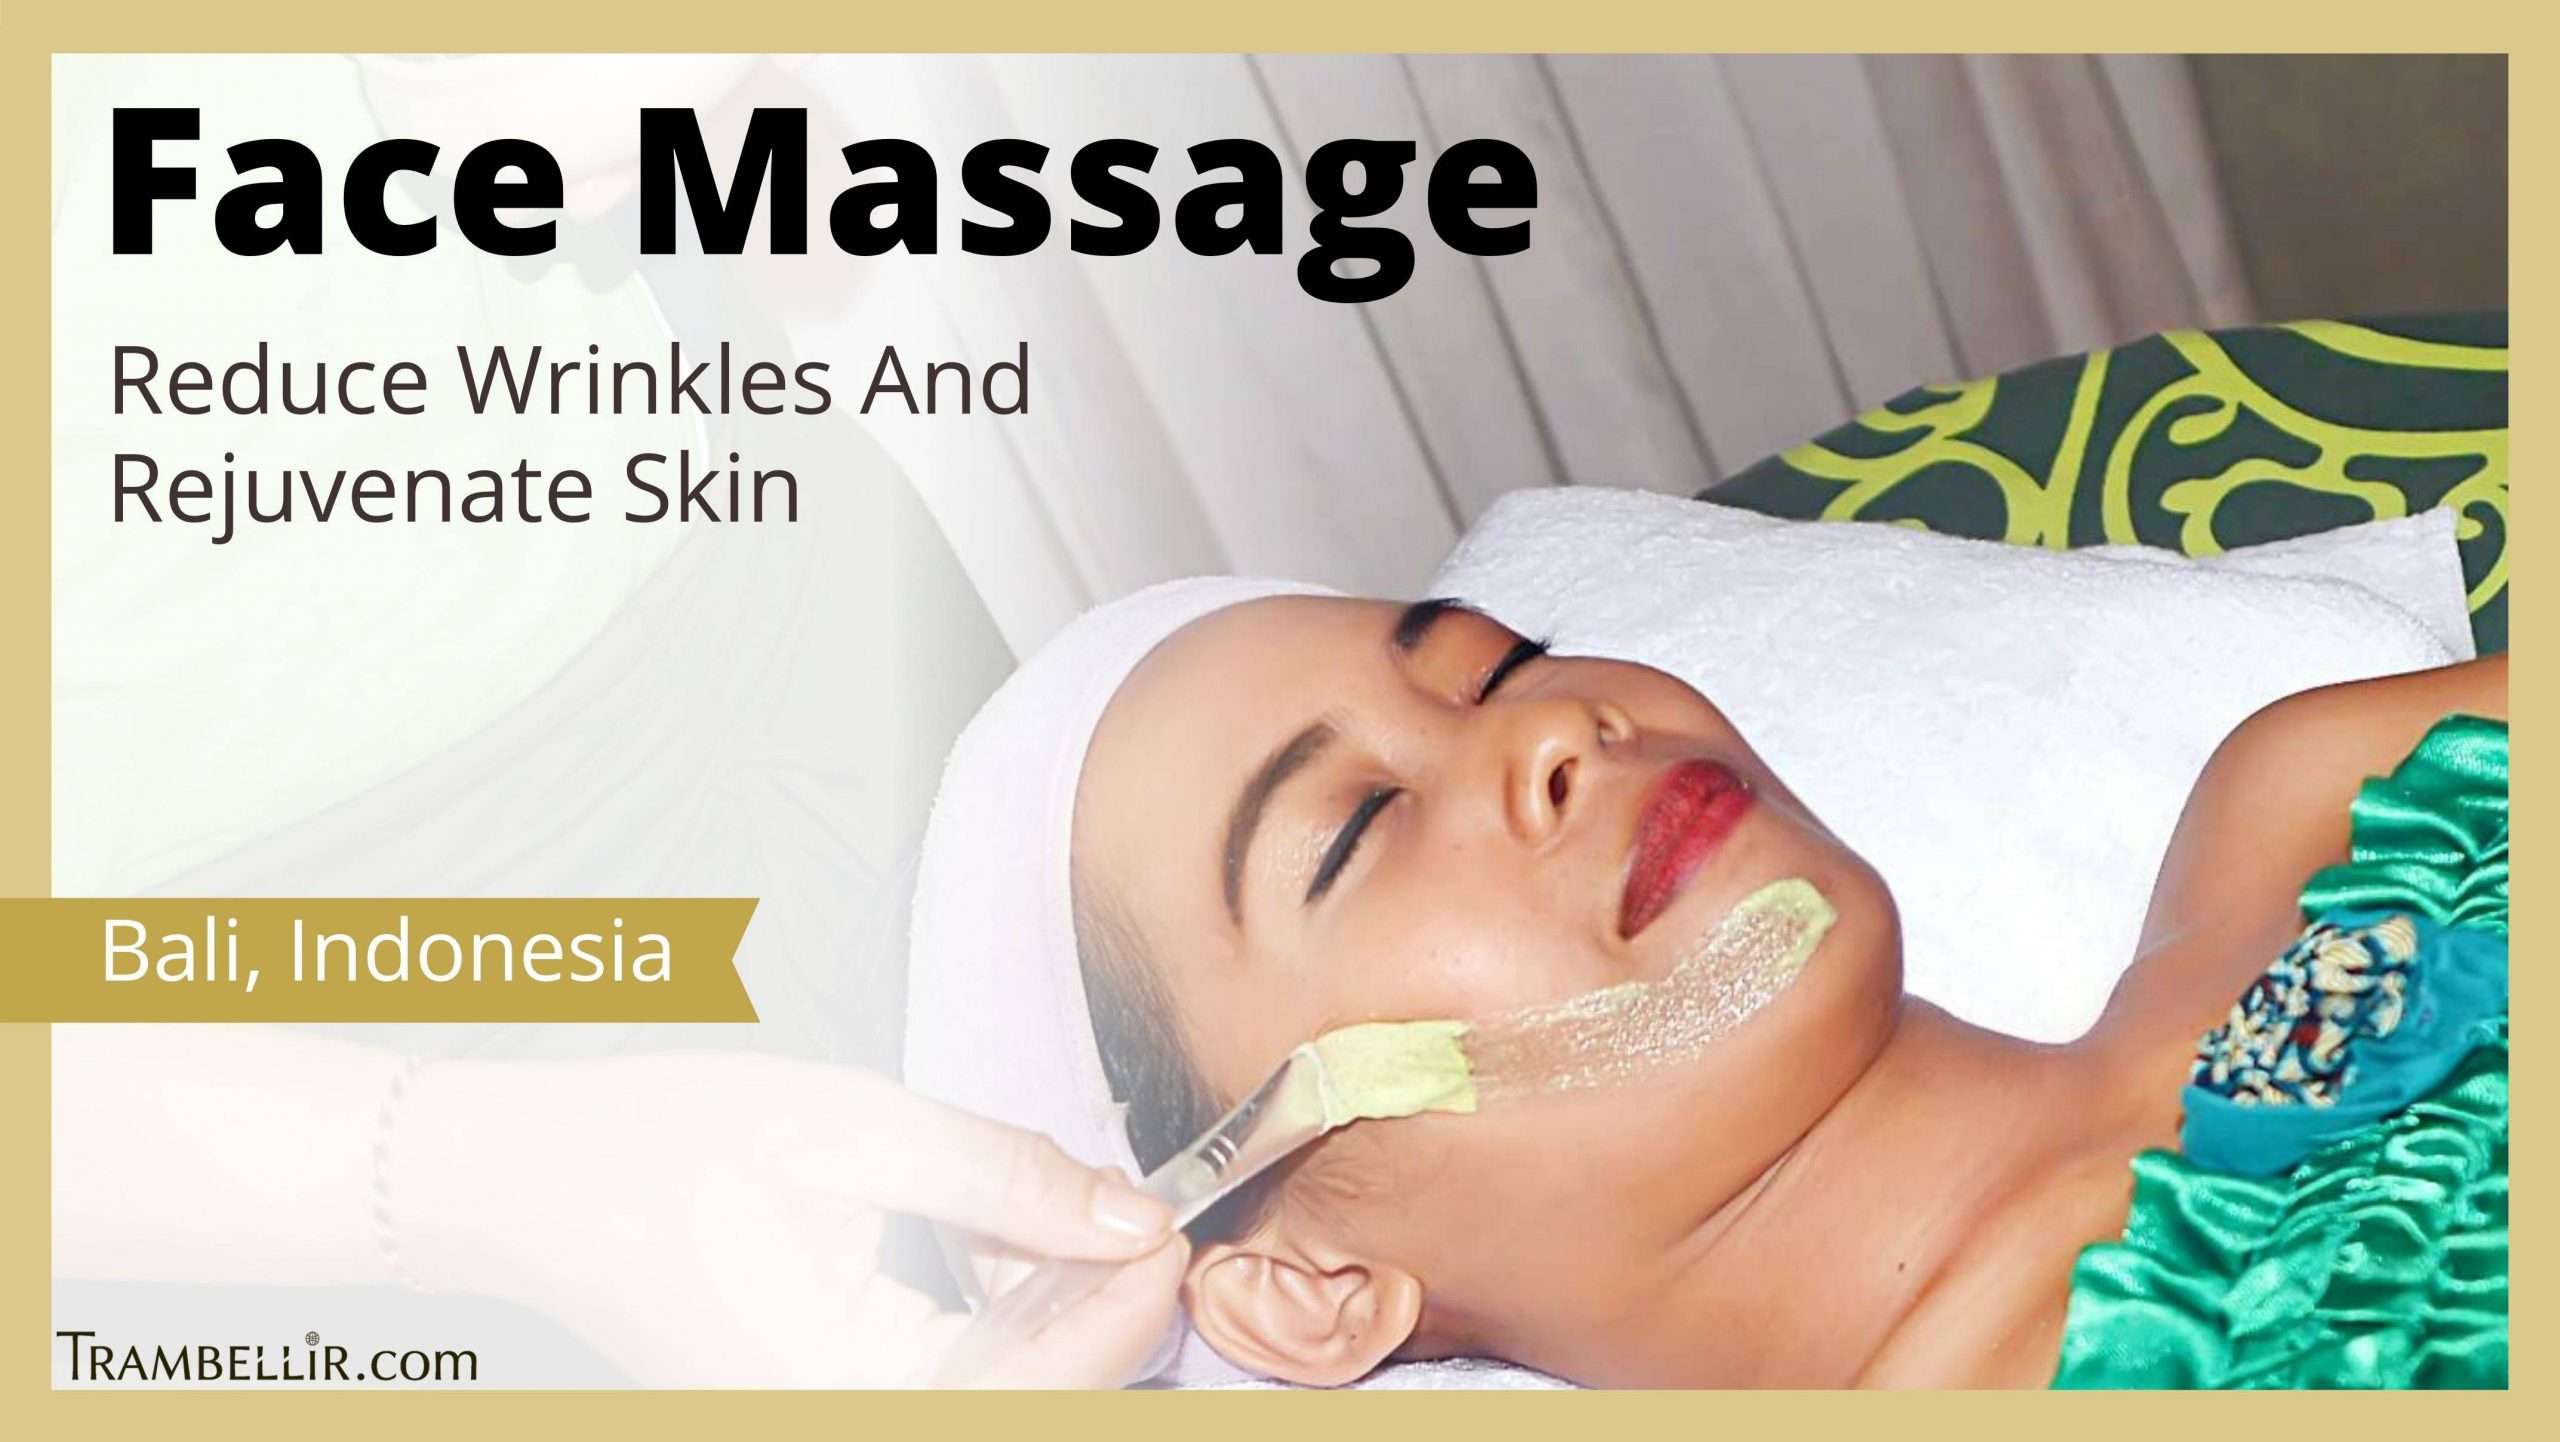 Face Massage (Reduce Wrinkles And Rejuvenate Skin)